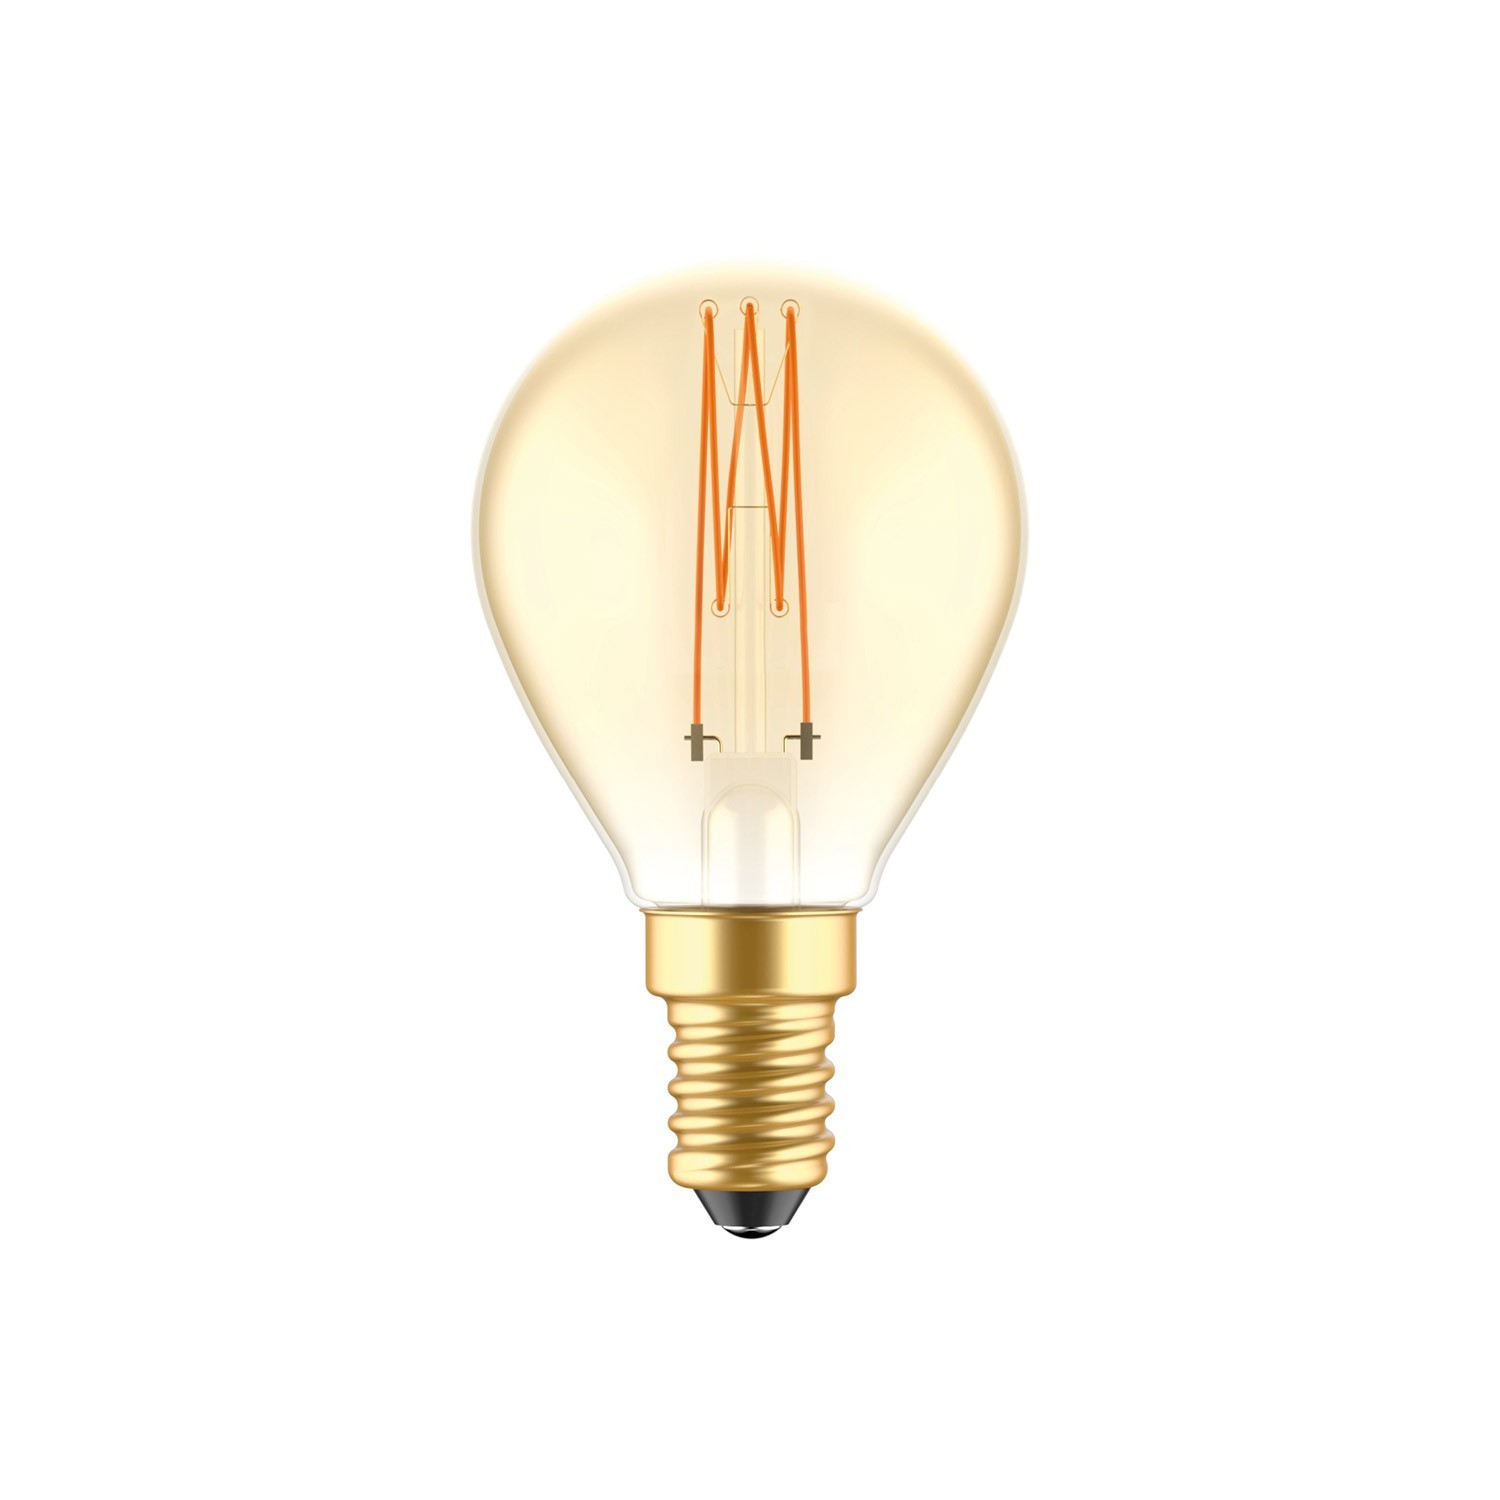 Ampoule dorée LED C52 Carbon Vintage Filament Cage Mini globe G45 3,5W E14 Dimmable 2700K